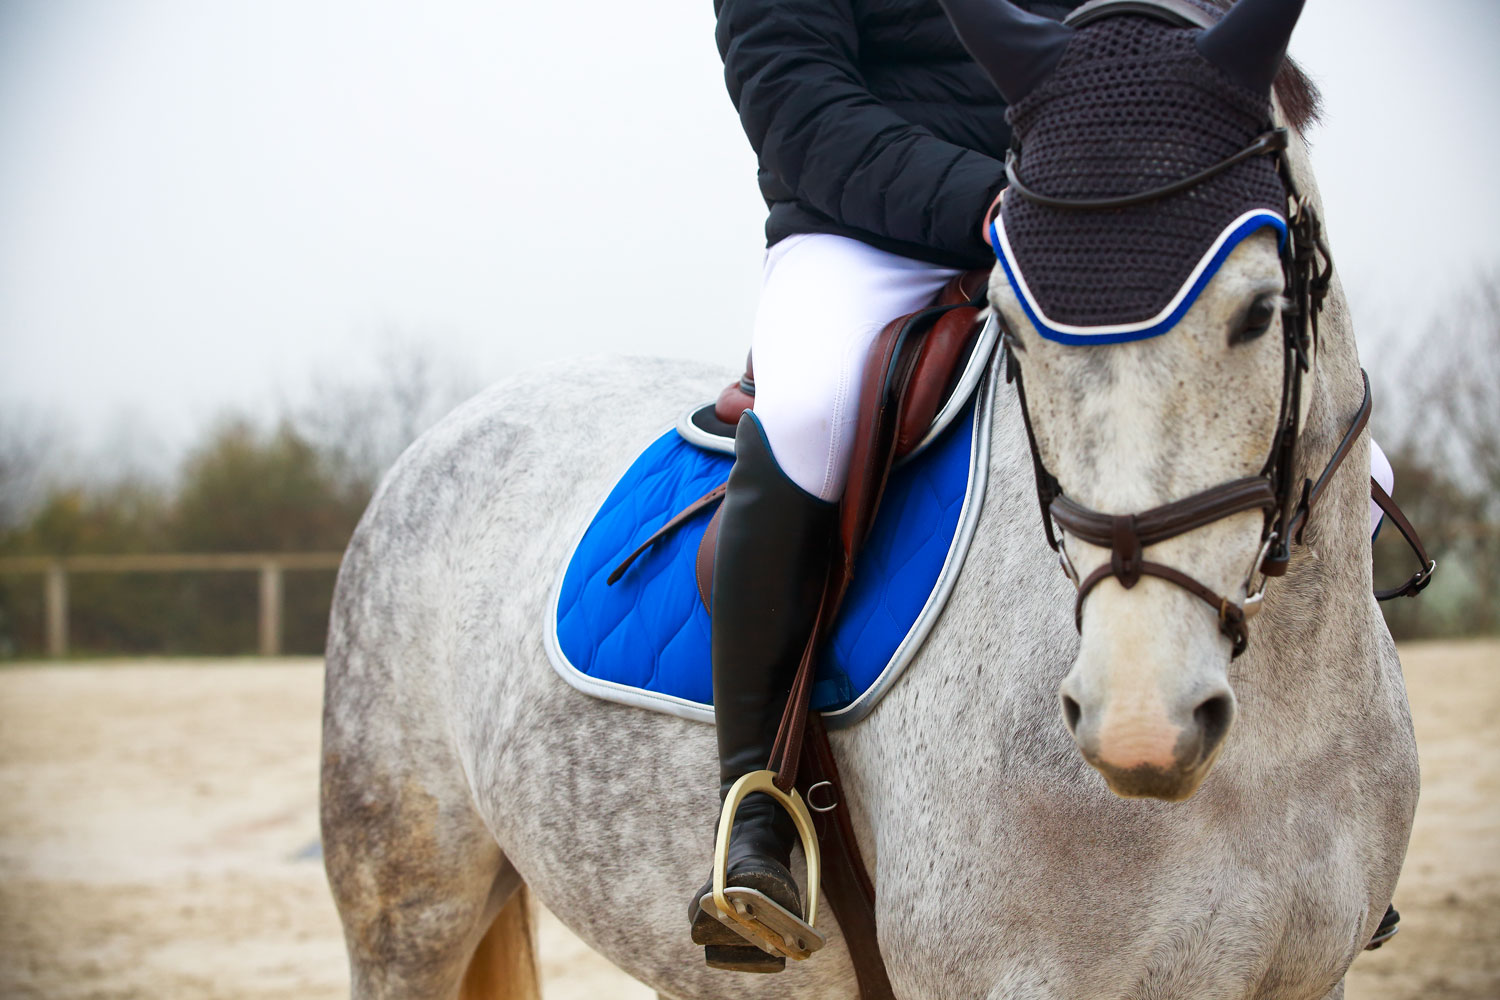 Comment bien choisir son pantalon d'équitation ? - Royal Horse